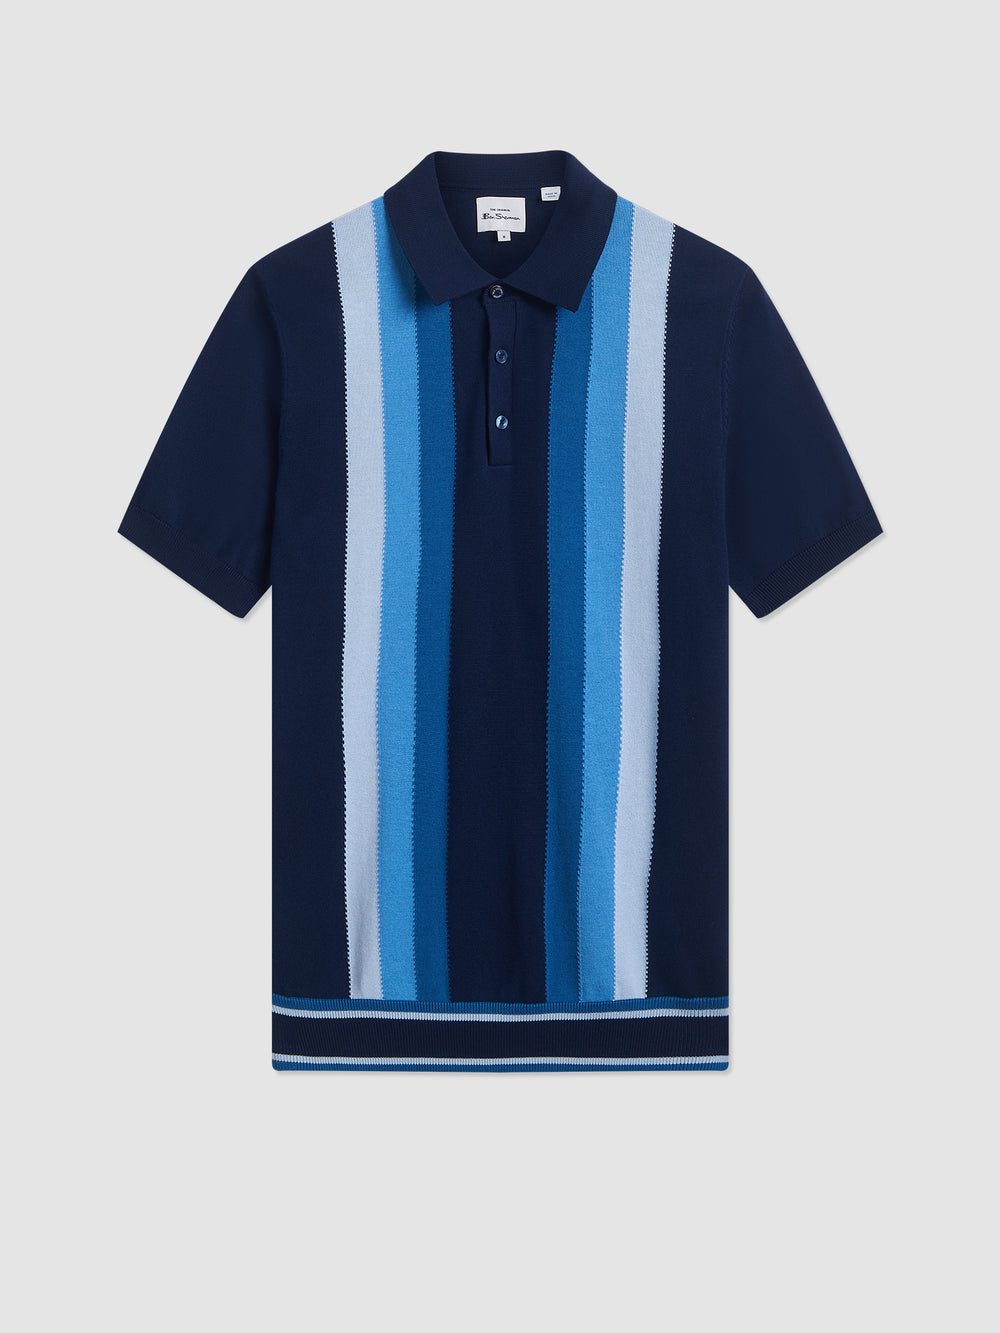 Iconic Gradient Vertical Stripe Mod Knit Polo - Ben Sherman